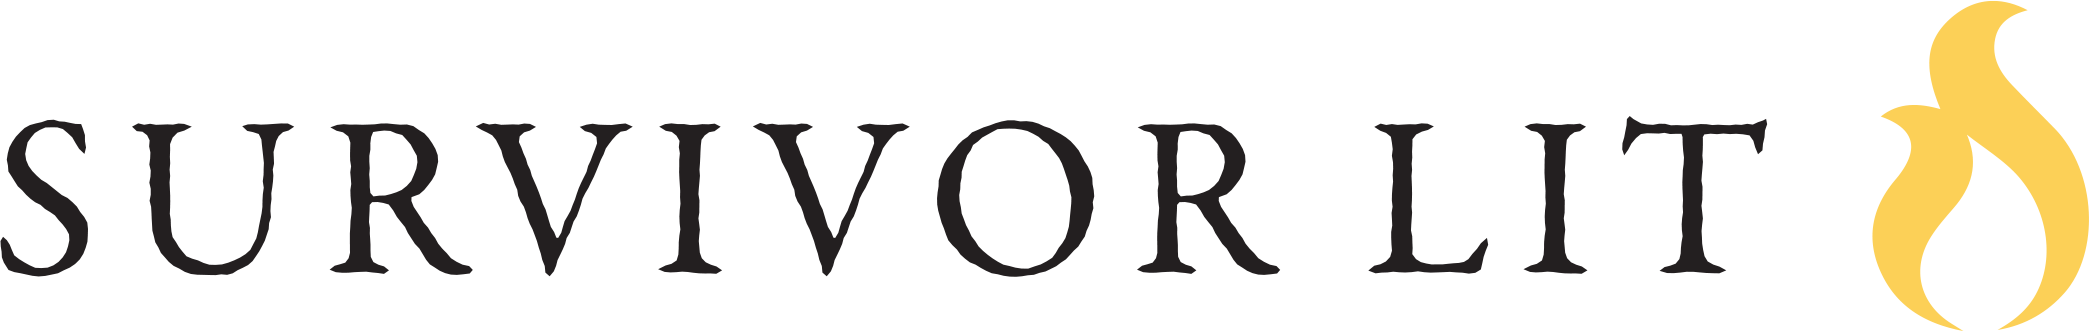 Imagem de download do logotipo do sobrevivente vazio do sobrevivente